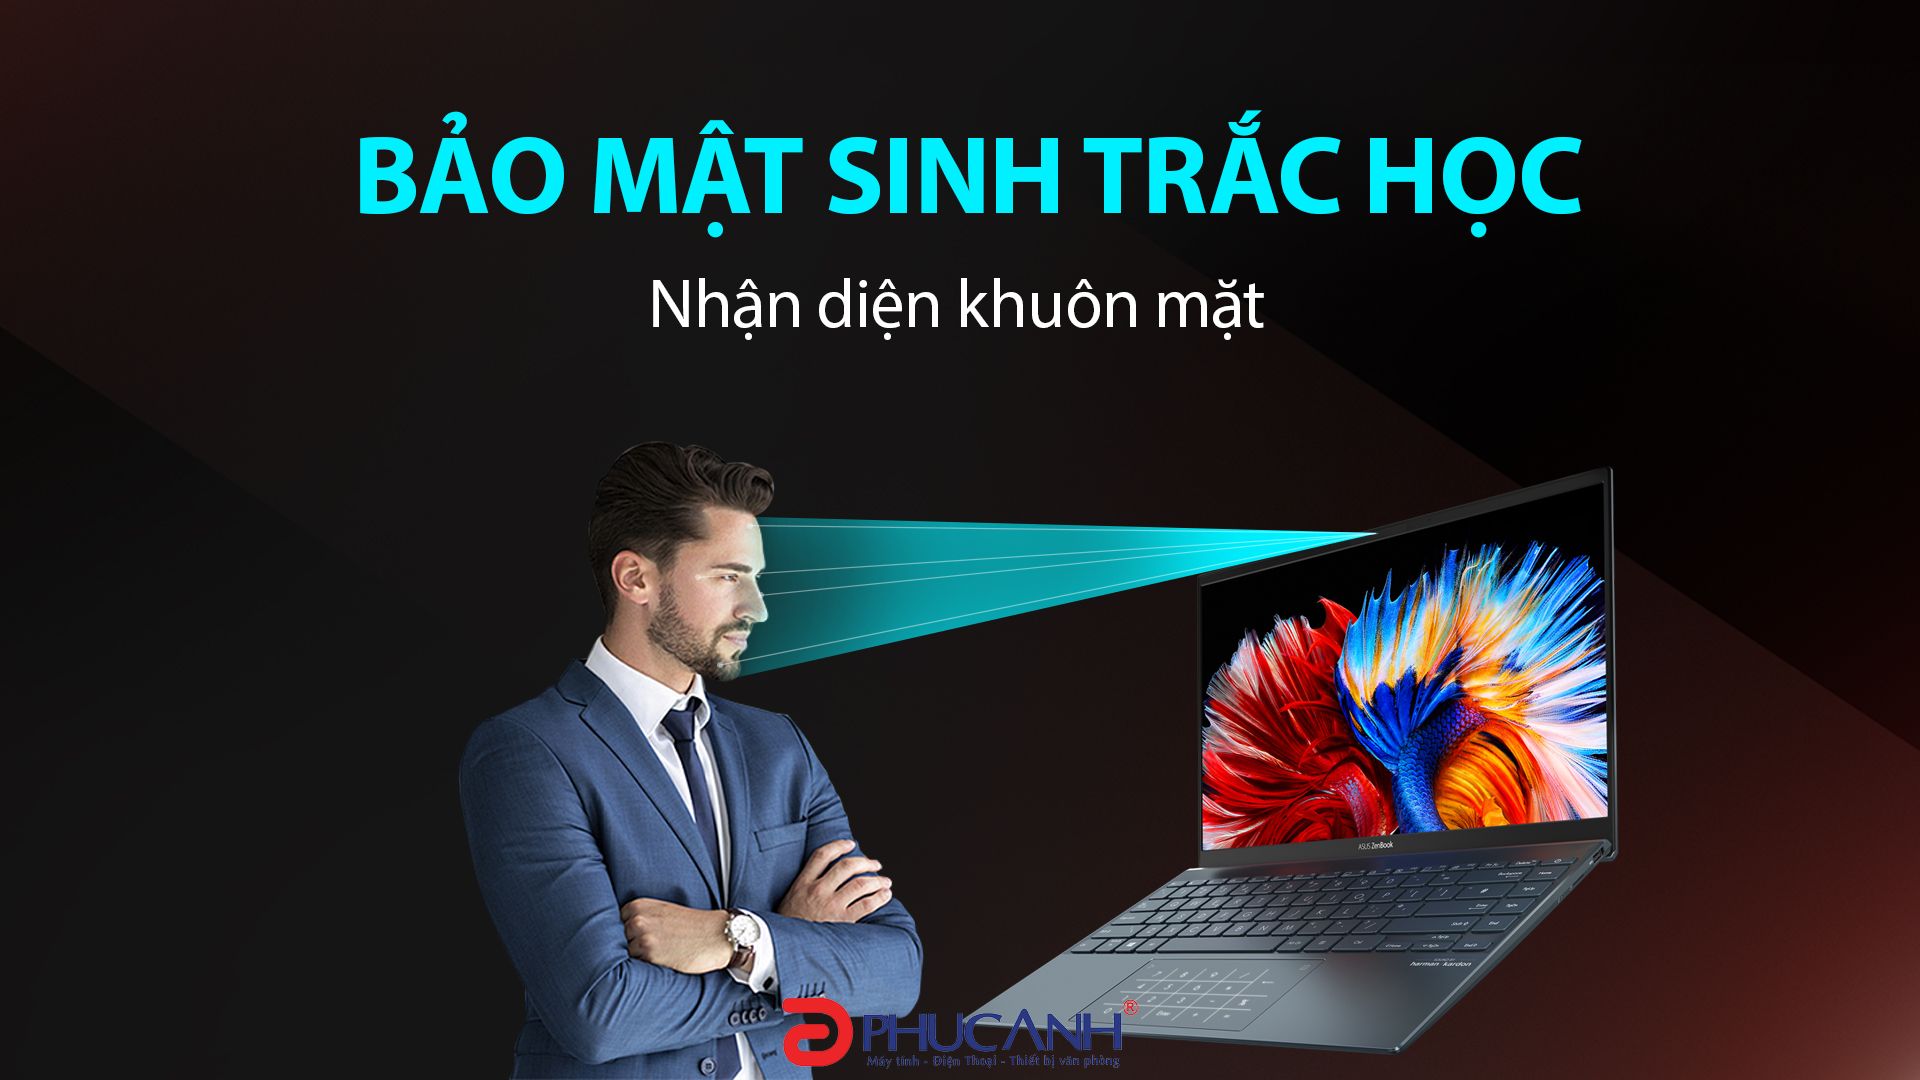 Laptop Asus Zenbook UX325EA-KG538W